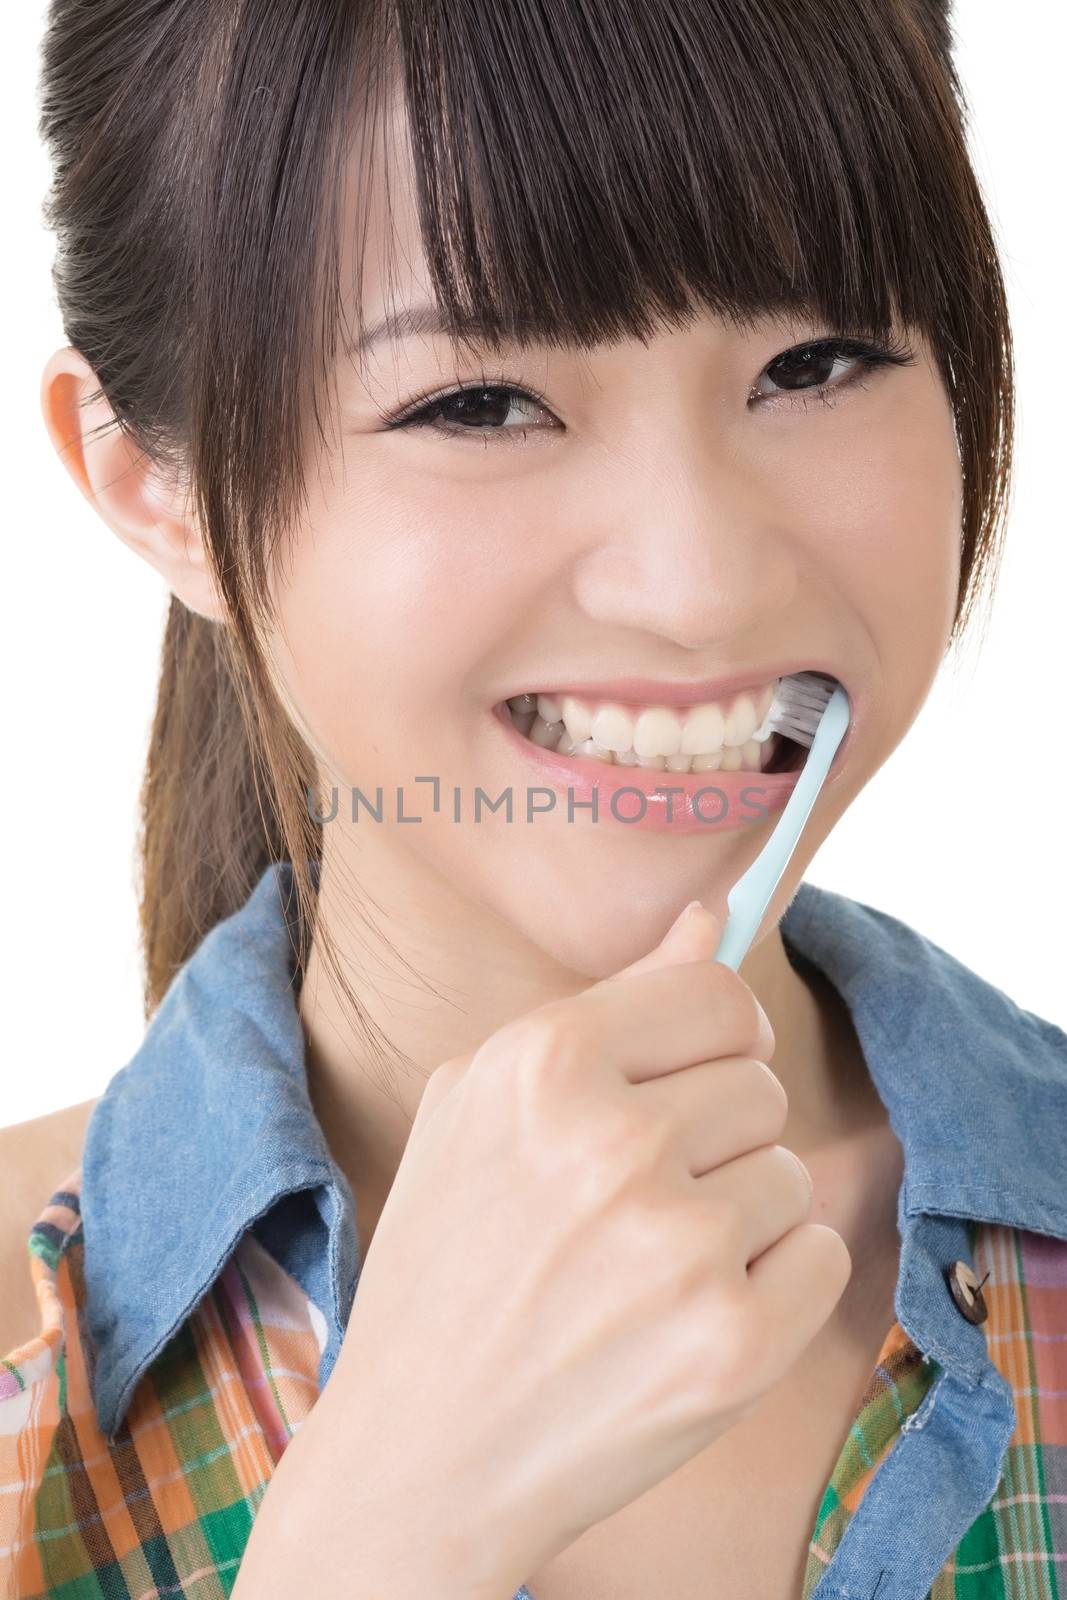 Closeup portrait of woman brushing teeth by elwynn